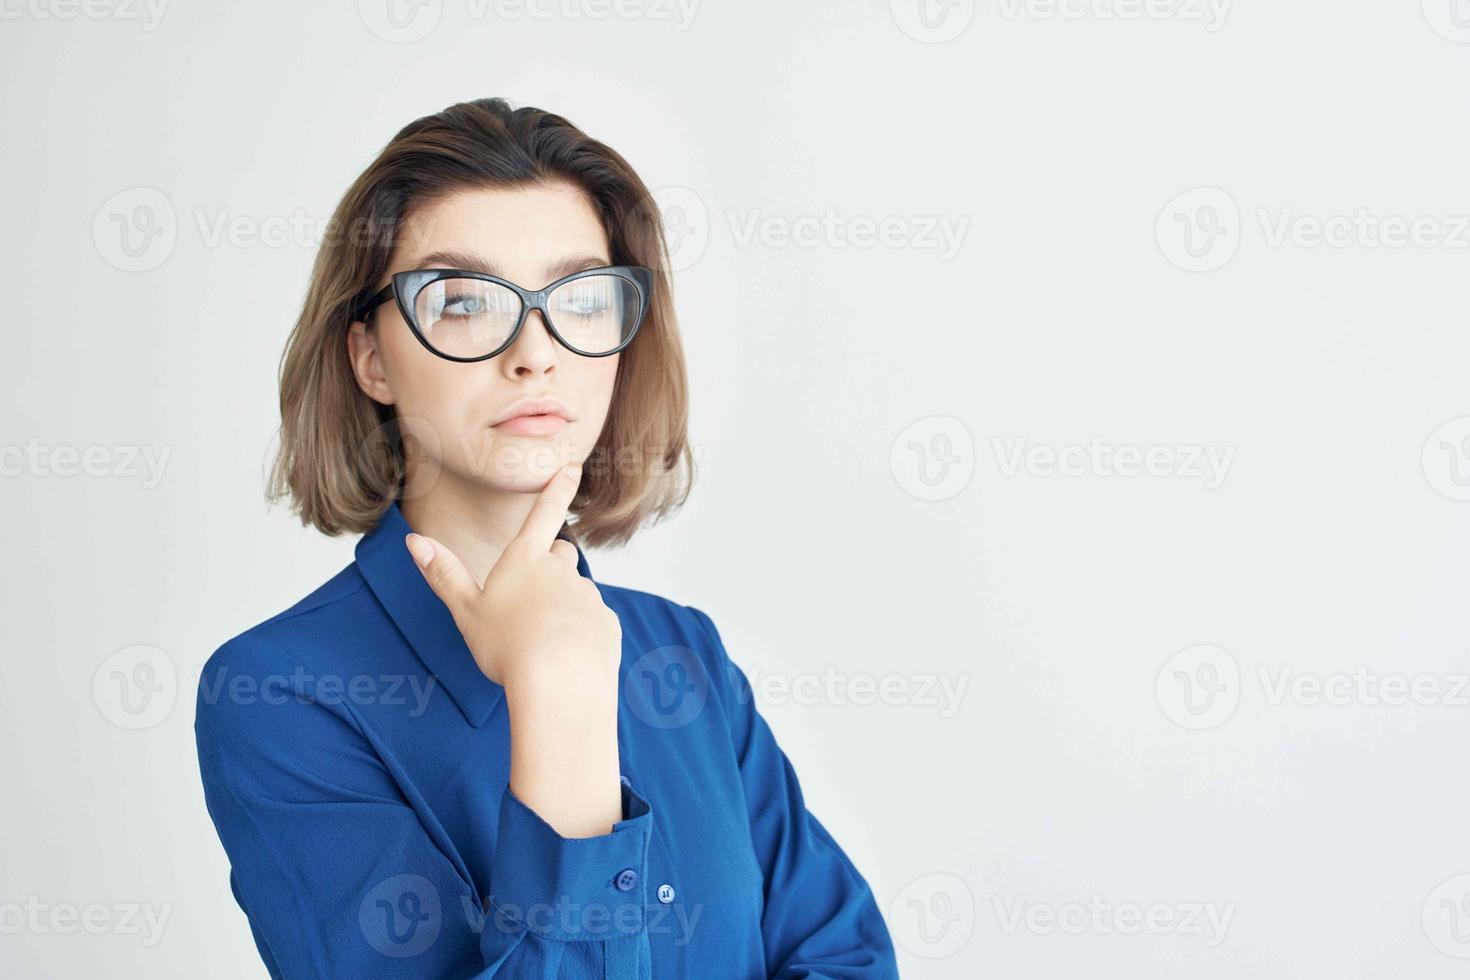 Geschäft Frau tragen Brille Blau Hemd Mode elegant Stil foto